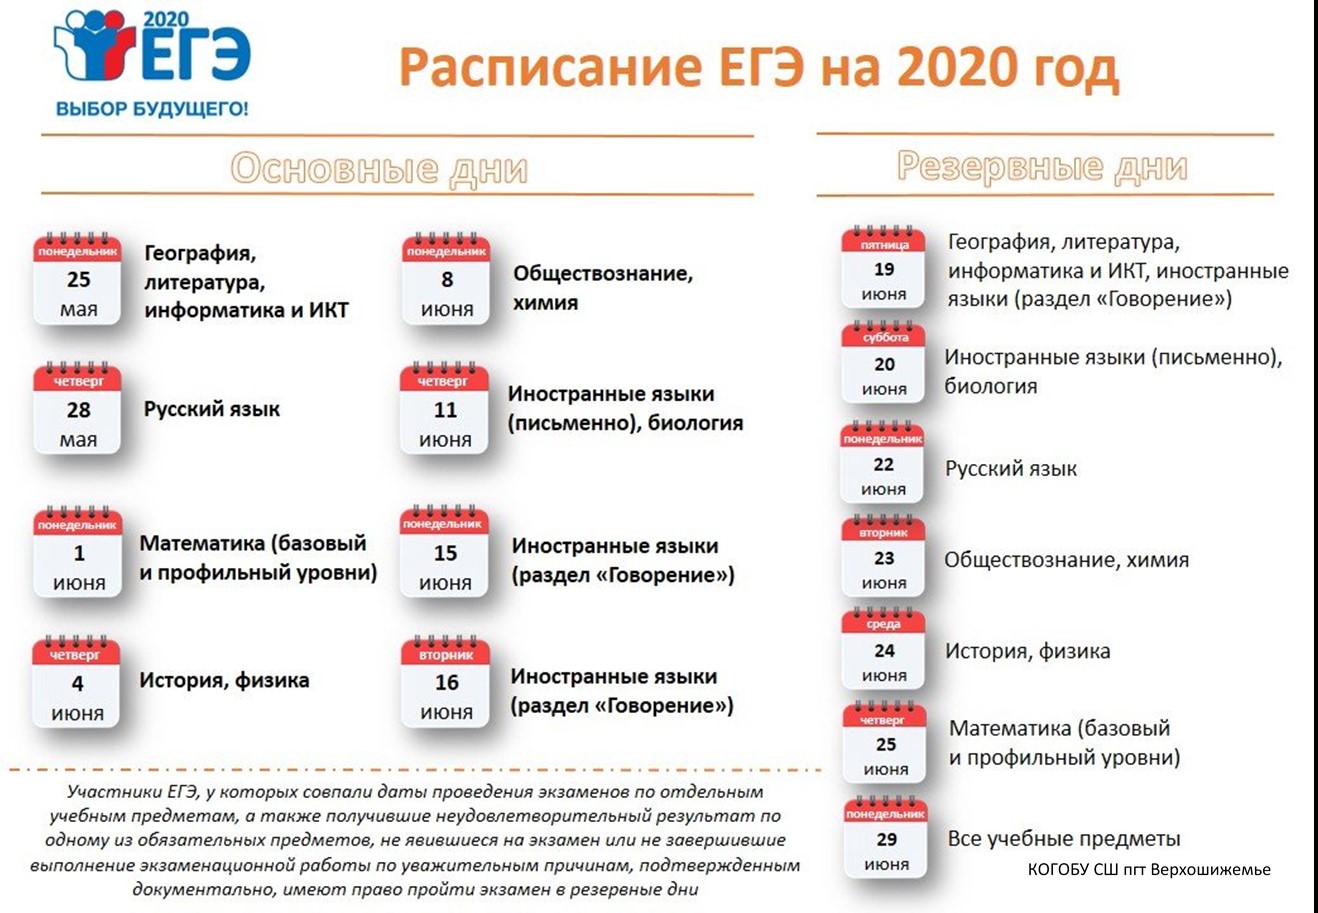 4 декабря 2020 год. ЕГЭ 2020 даты проведения. Сроки проведения единого государственного экзамена в 2020 году. ЕГЭ 2020 расписание экзаменов. Резервные даты ЕГЭ 2020.